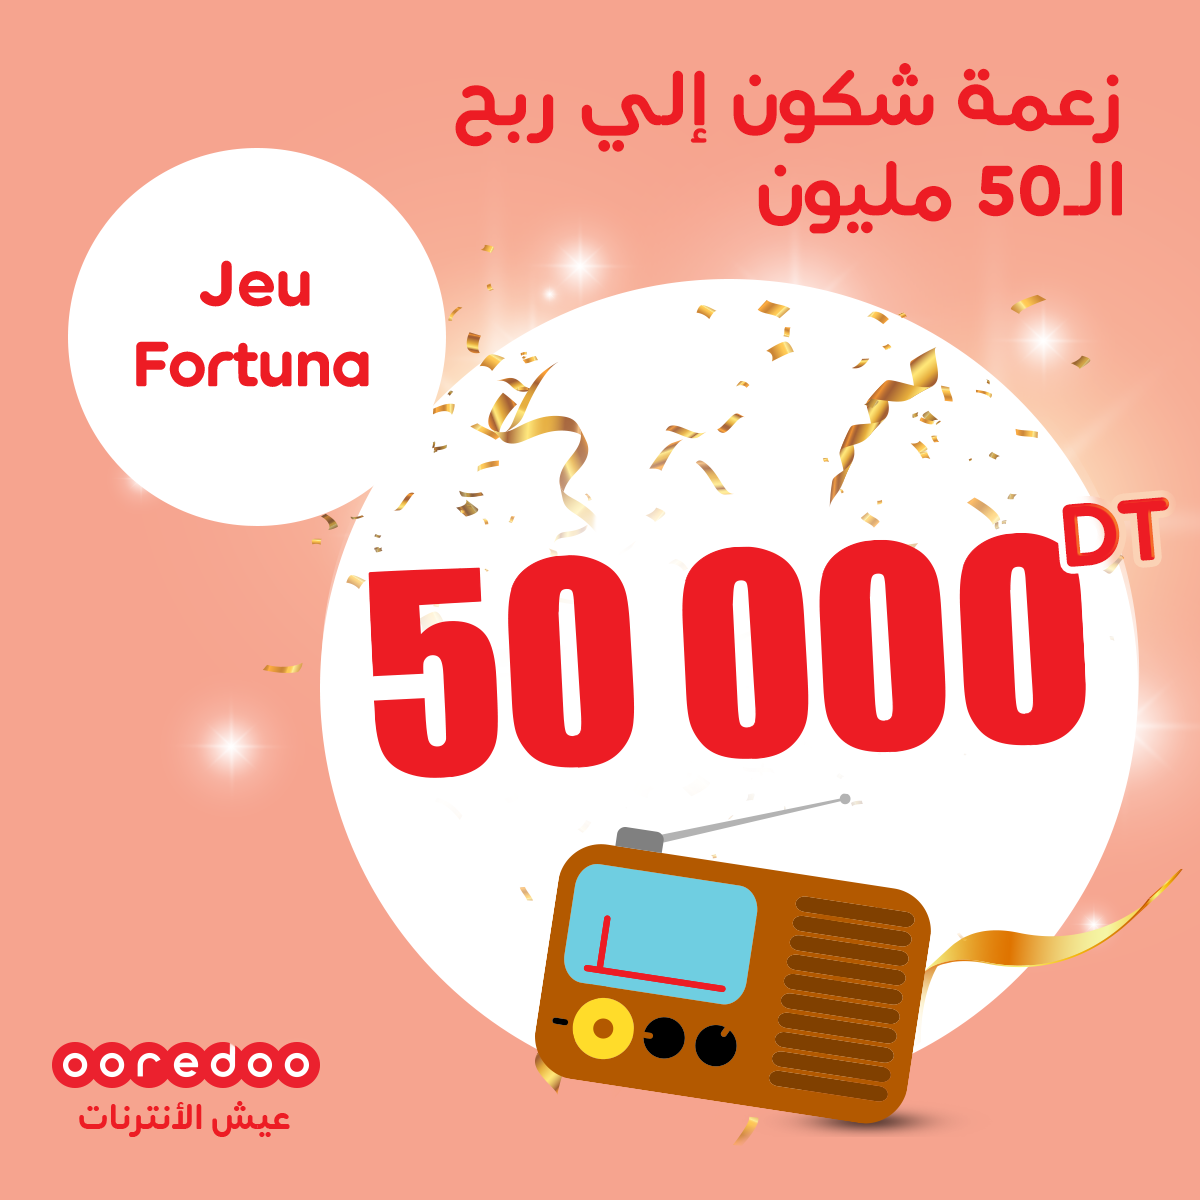 Ooredoo annonce le nom de l’heureux gagnant de la somme de 50 000 dt